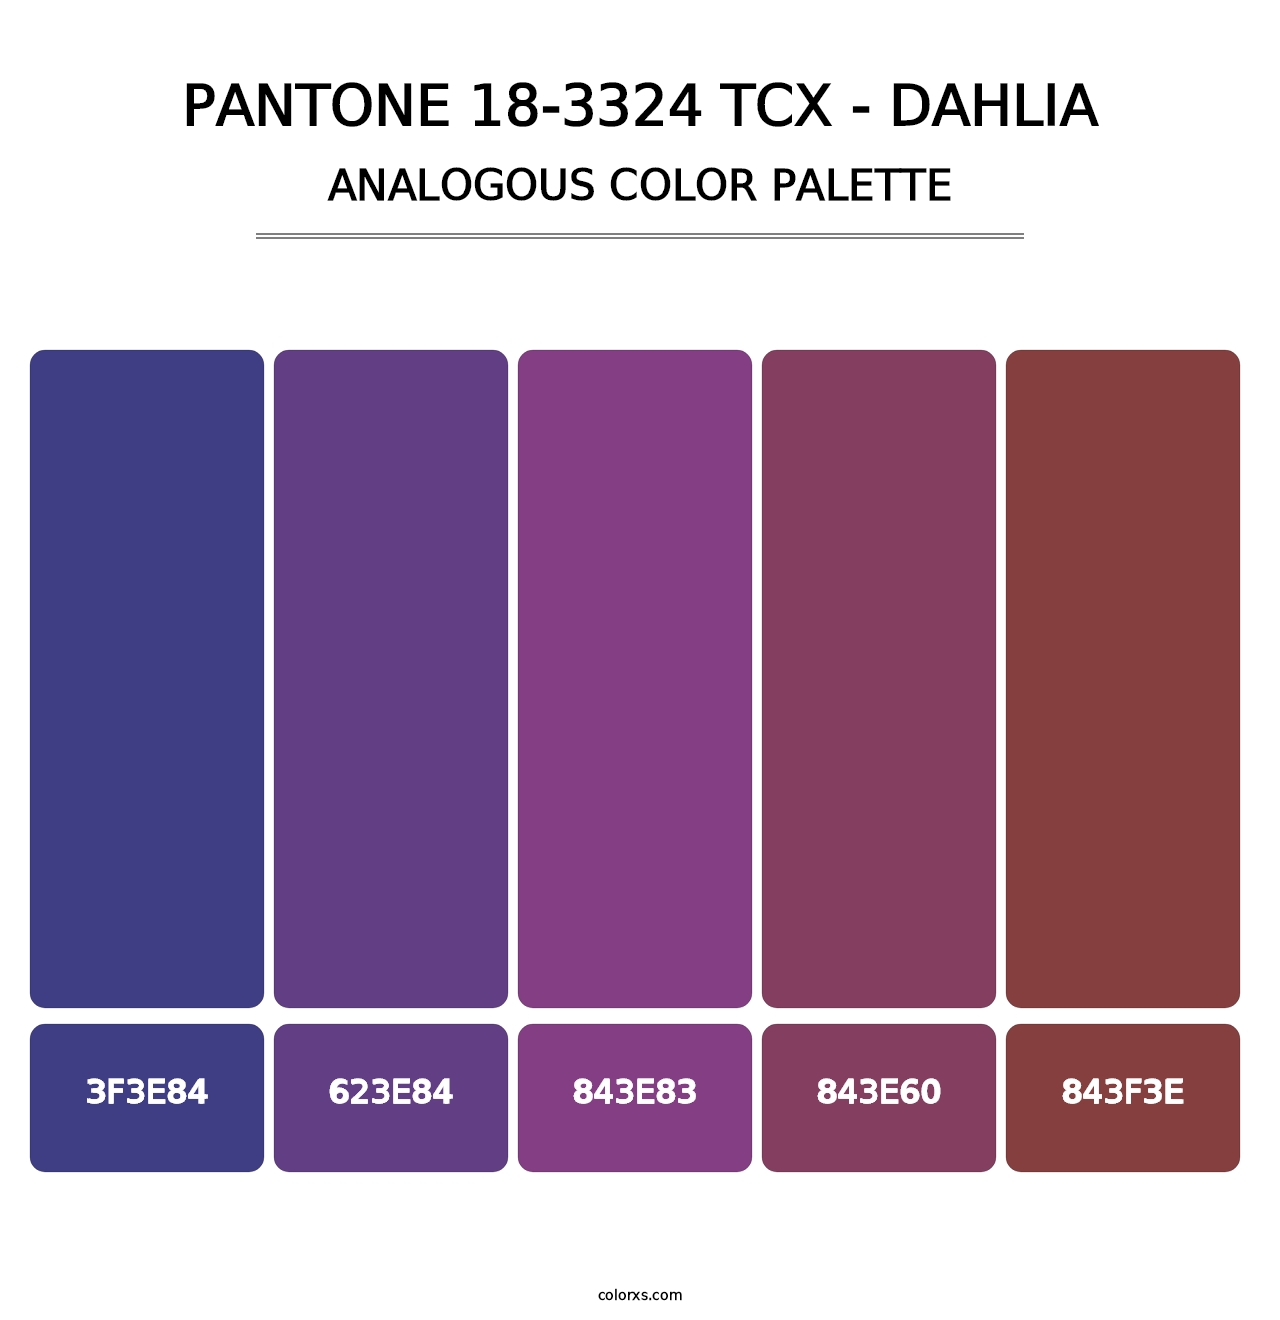 PANTONE 18-3324 TCX - Dahlia - Analogous Color Palette